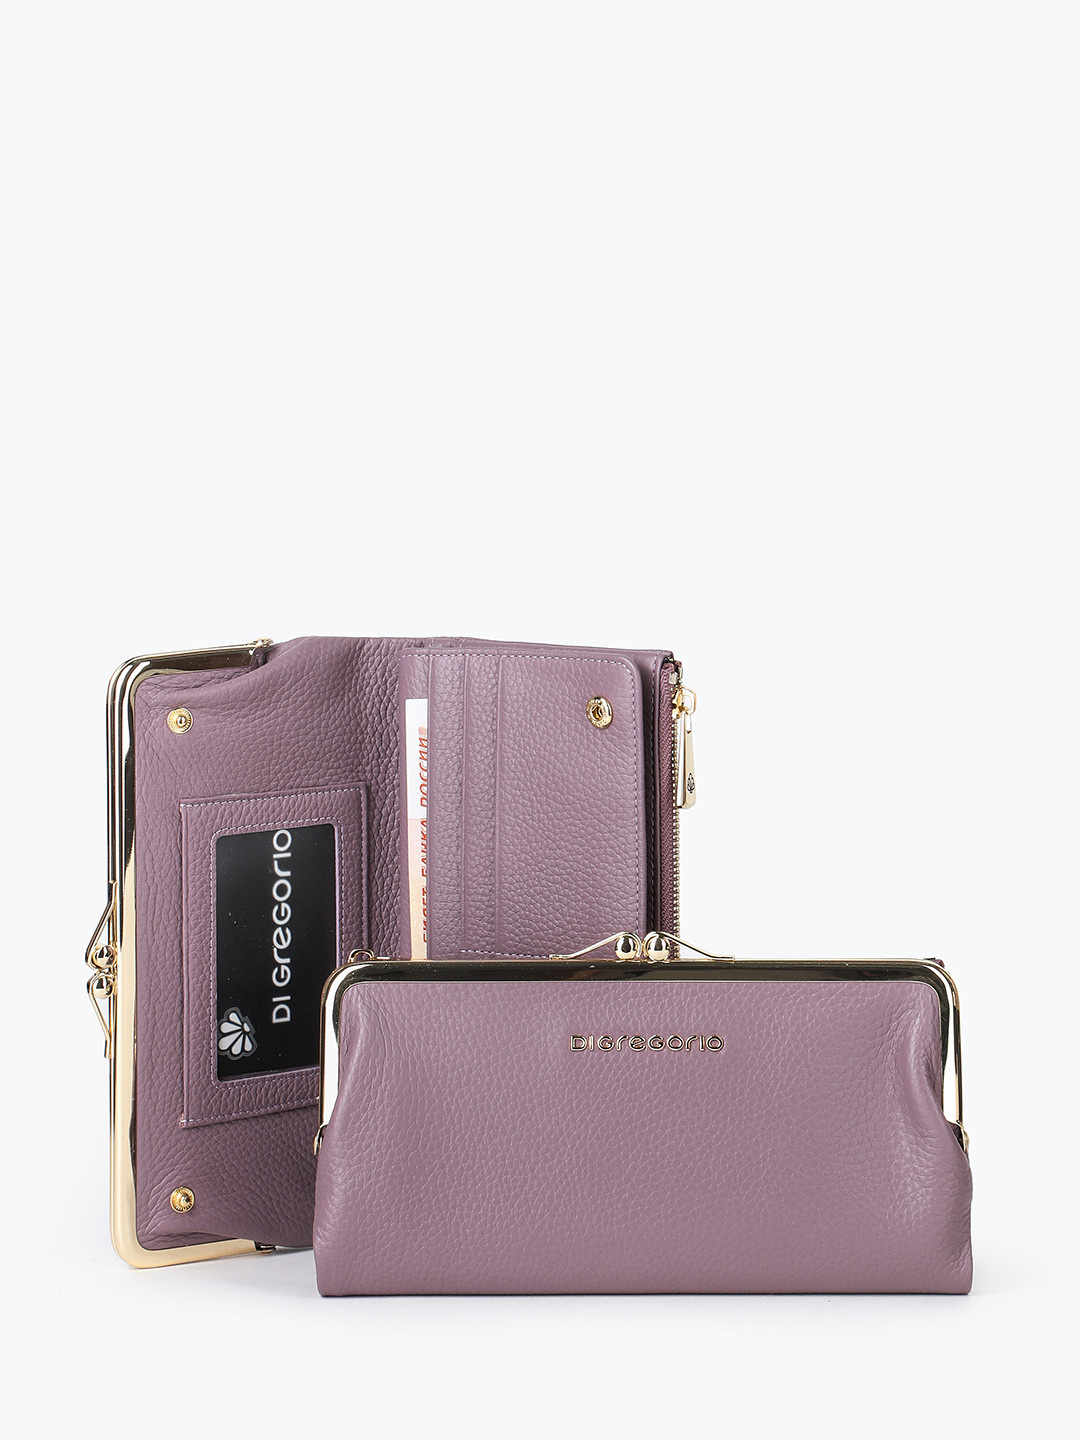 Фото Женский кошелек из натуральной мягкой кожи лилового оттенка с золотистой клипсой Кошельки